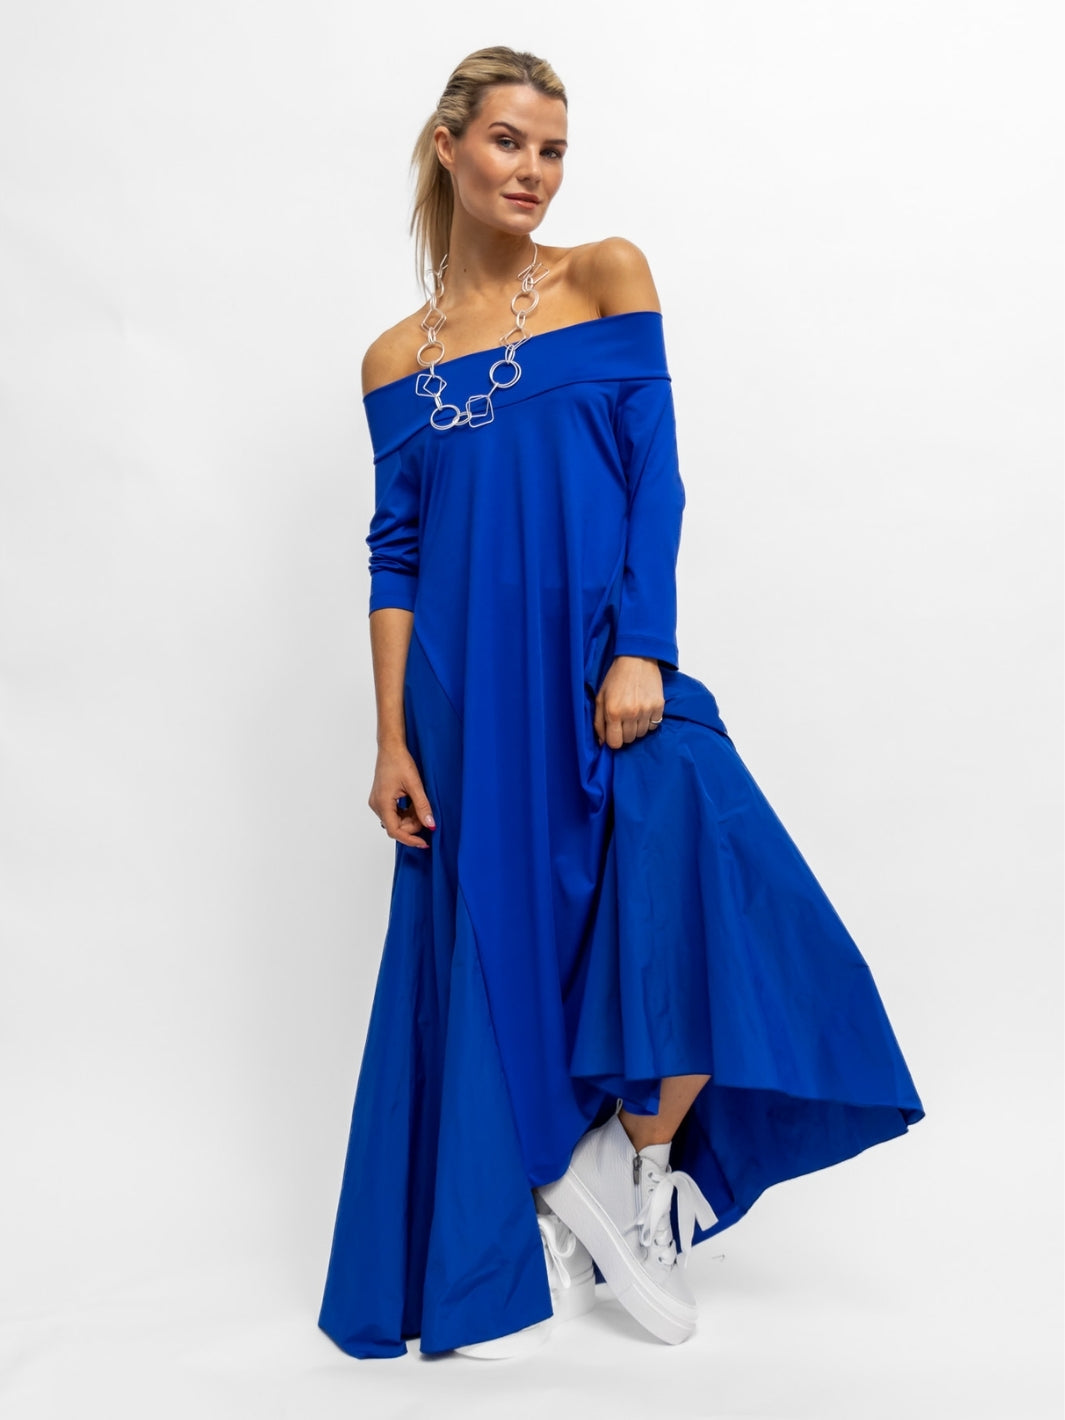 Xenia Design Dress Xenia TOTO Dress in Electric Blue